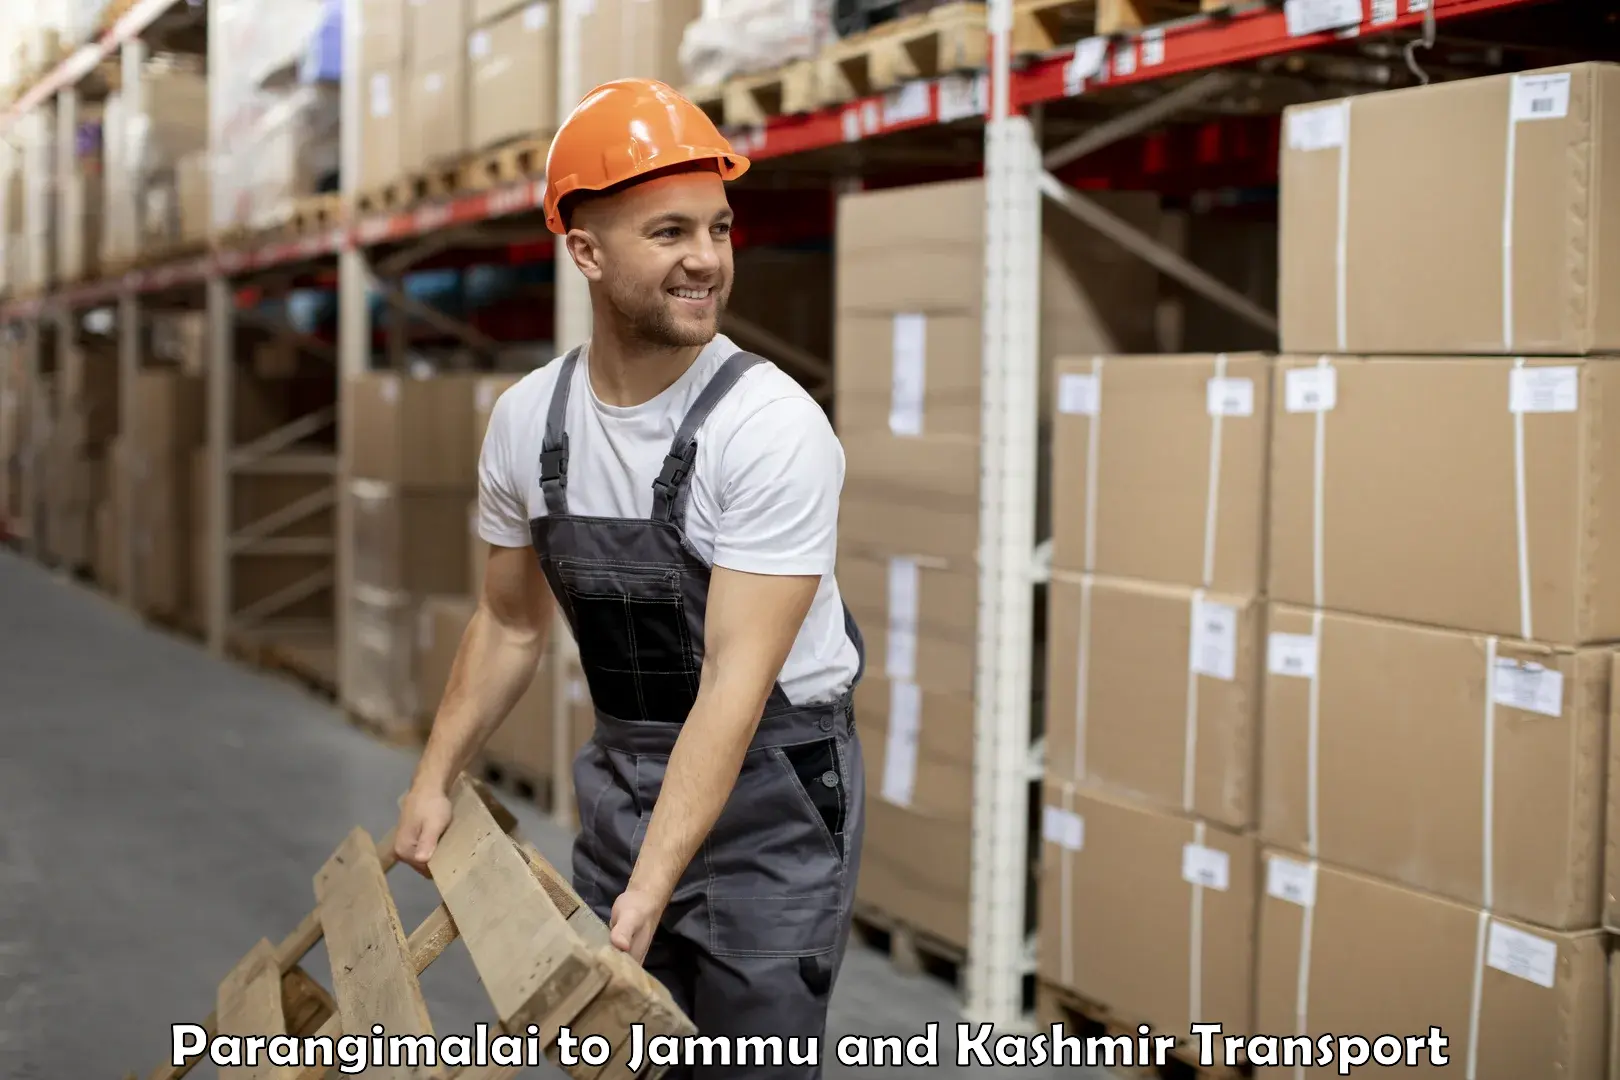 Truck transport companies in India Parangimalai to Jammu and Kashmir